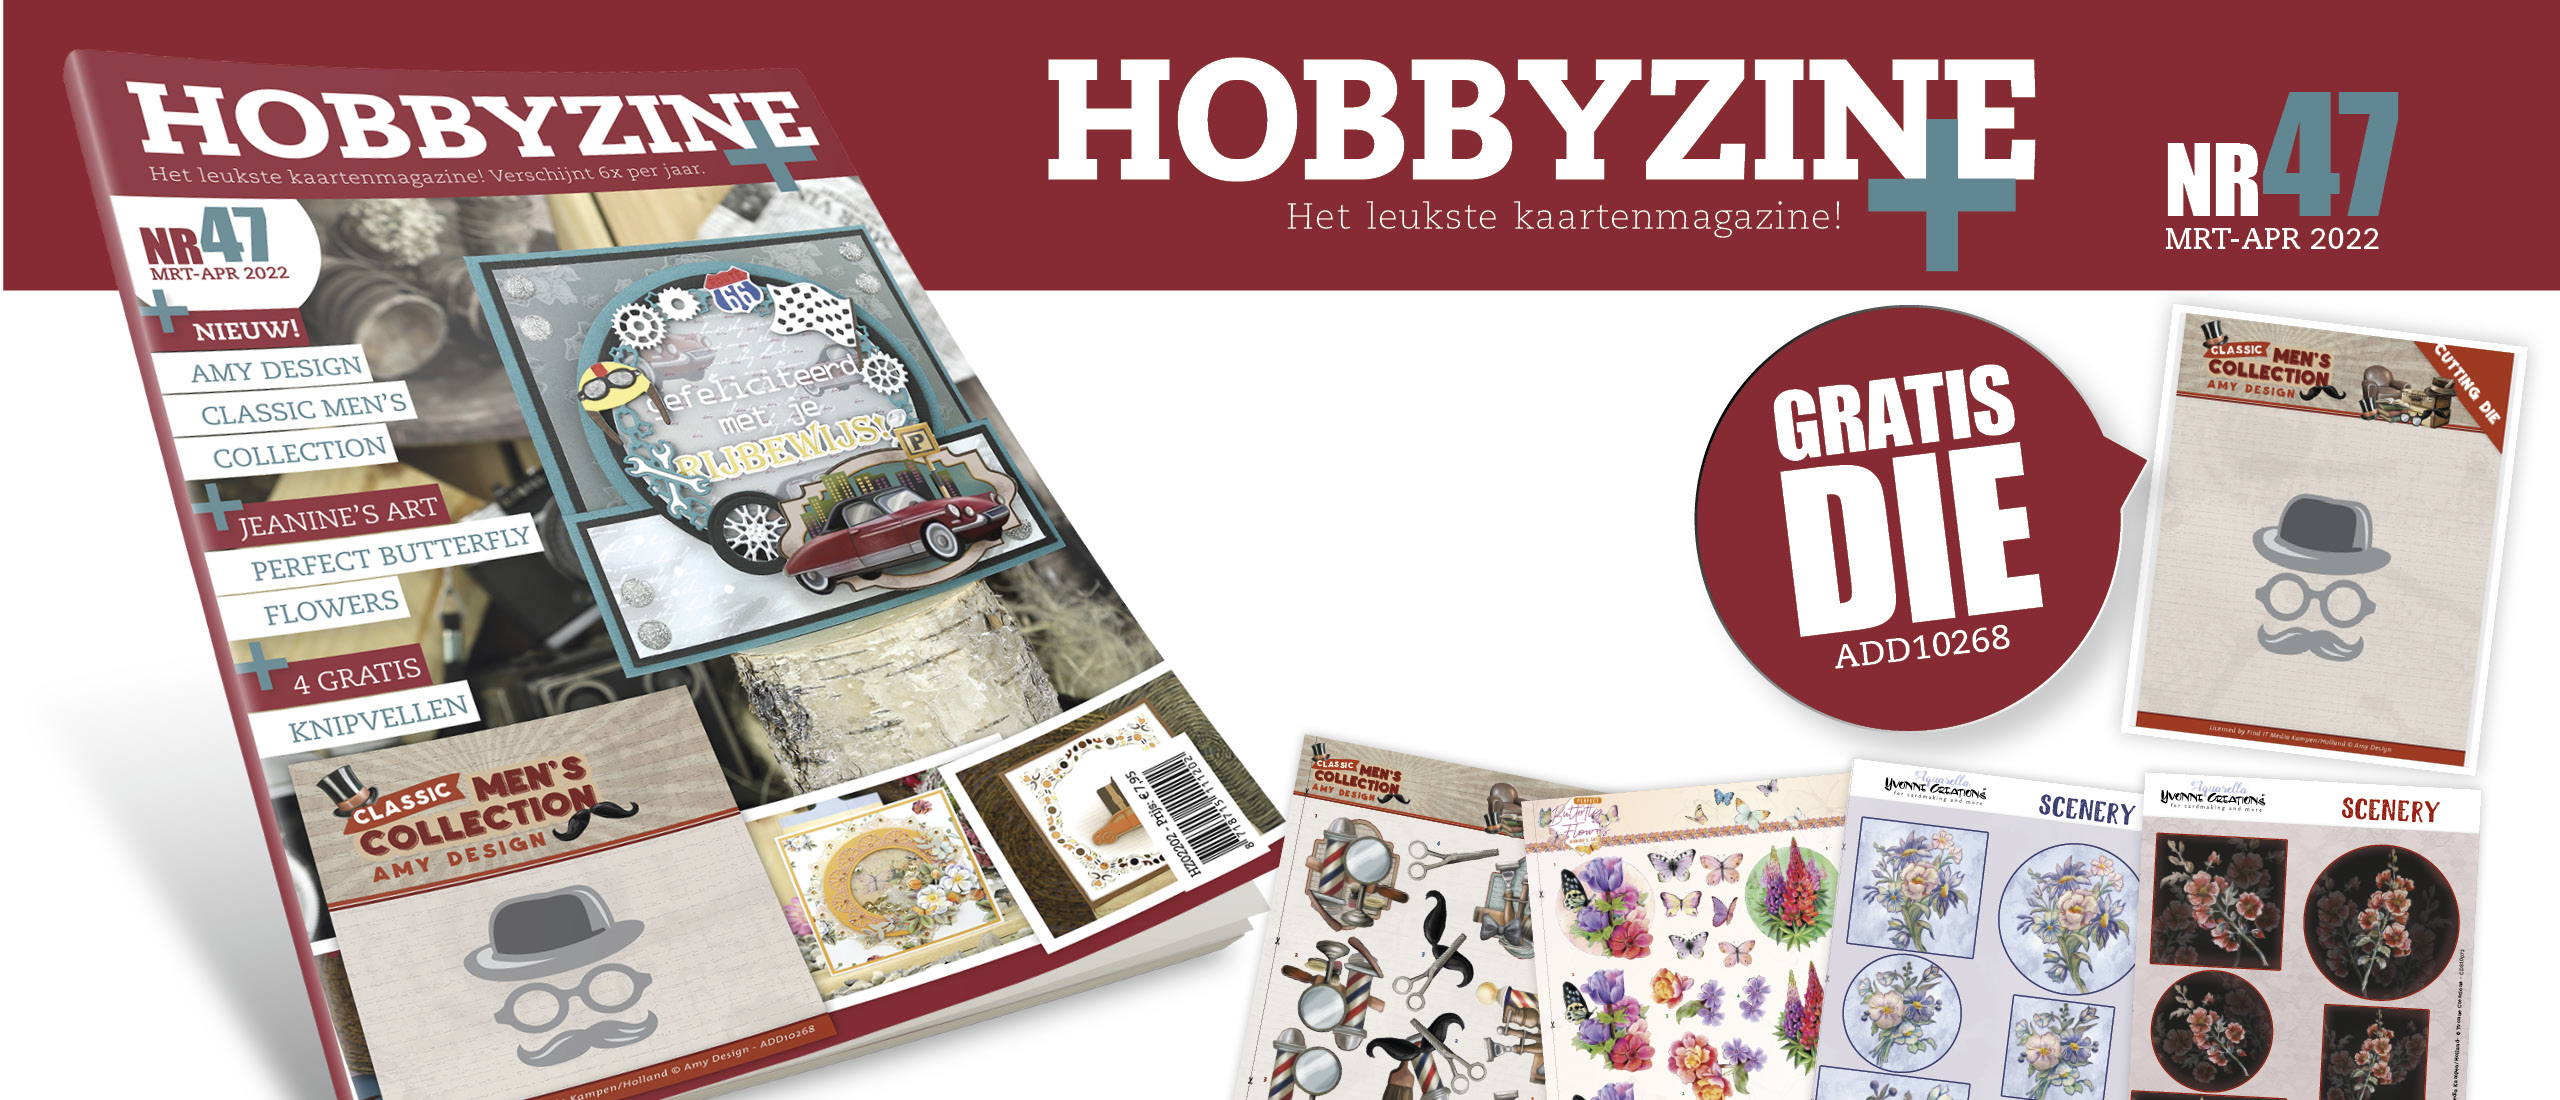 Hobbyzine 47 is er!